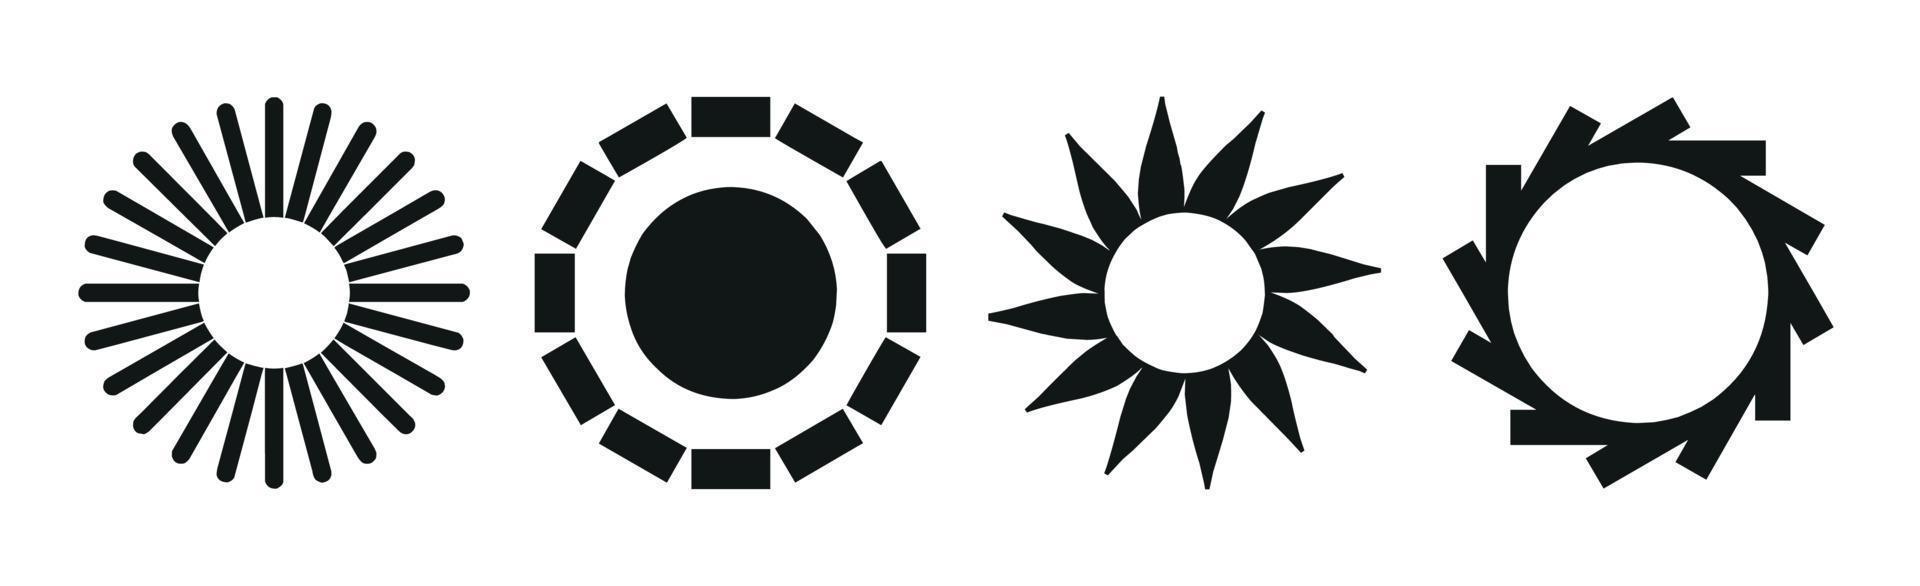 colección de 4 diferentes piezas de abstracción de sol negro sobre fondo blanco - vector